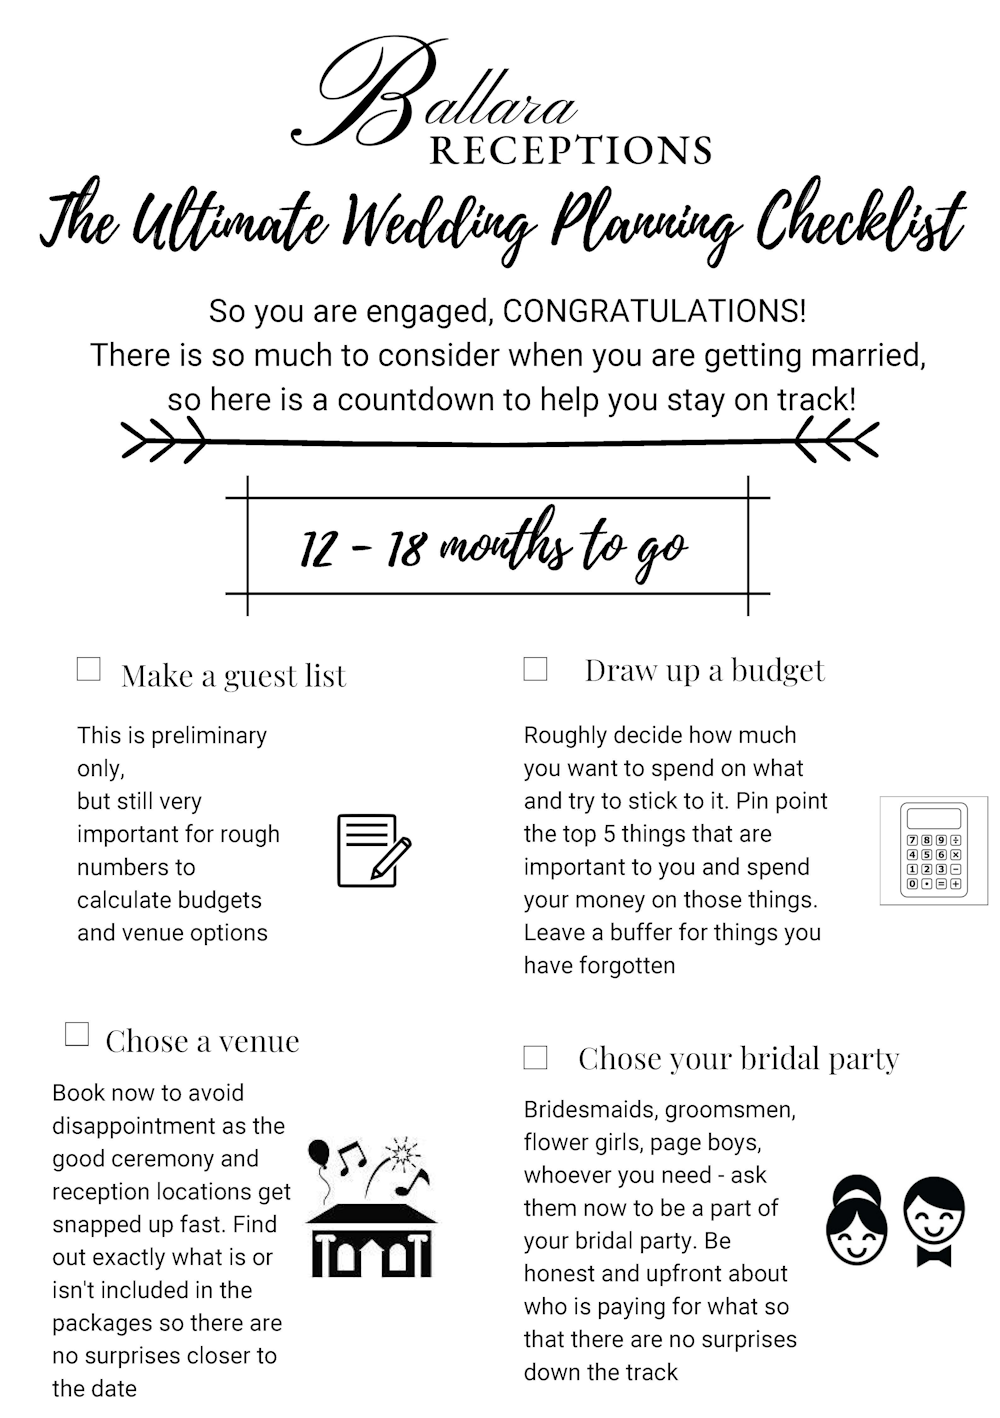 wedding checklist timeline